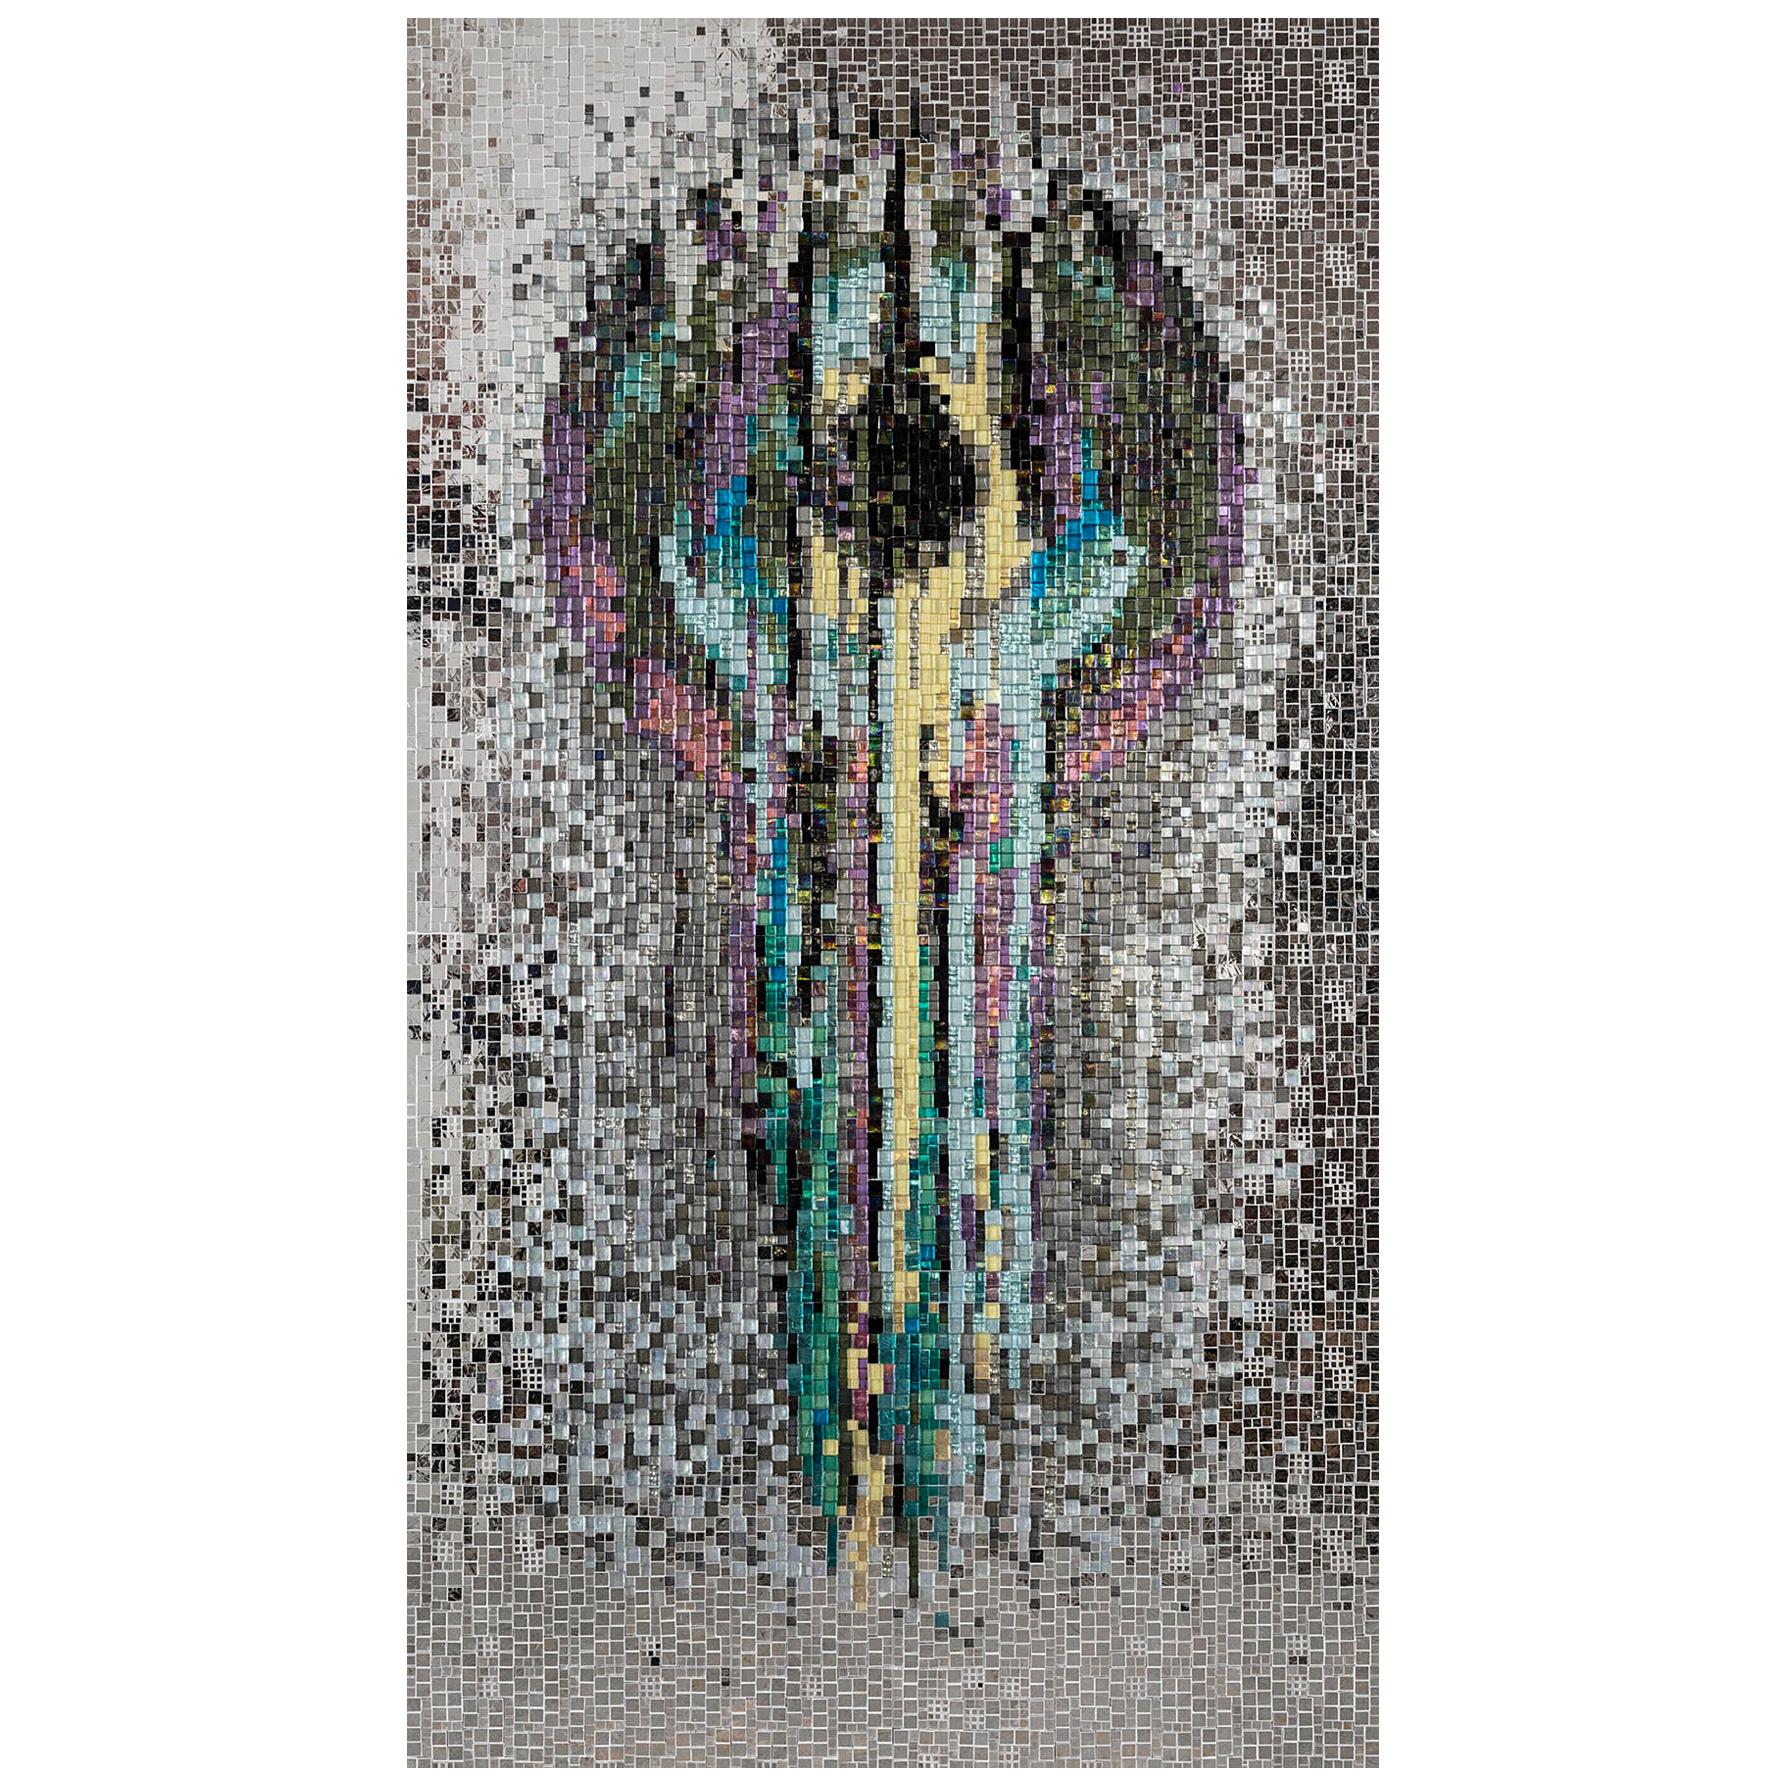 Artistic Mosaic Handmade on Aluminum Panel Dimension und Farben anpassbar